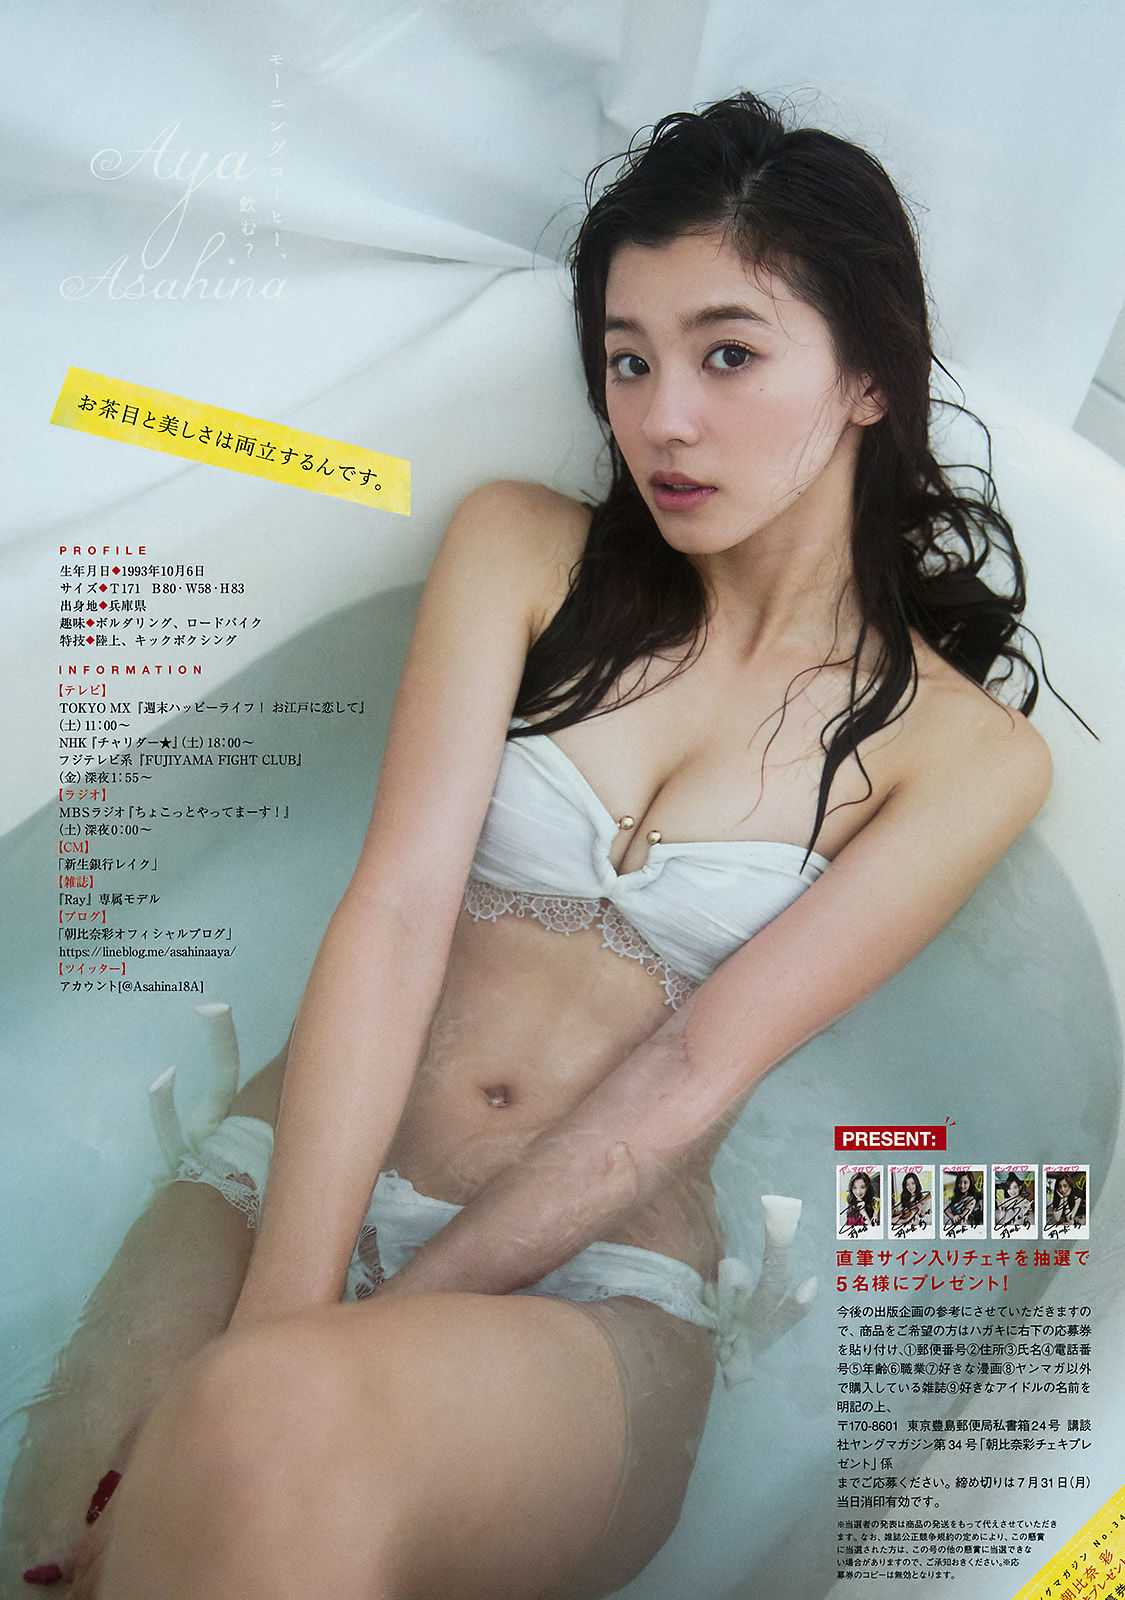 [Young Magazine] Aya Asahina Manaka Shida 2017 No.34 Photograph Page 7 No.829644